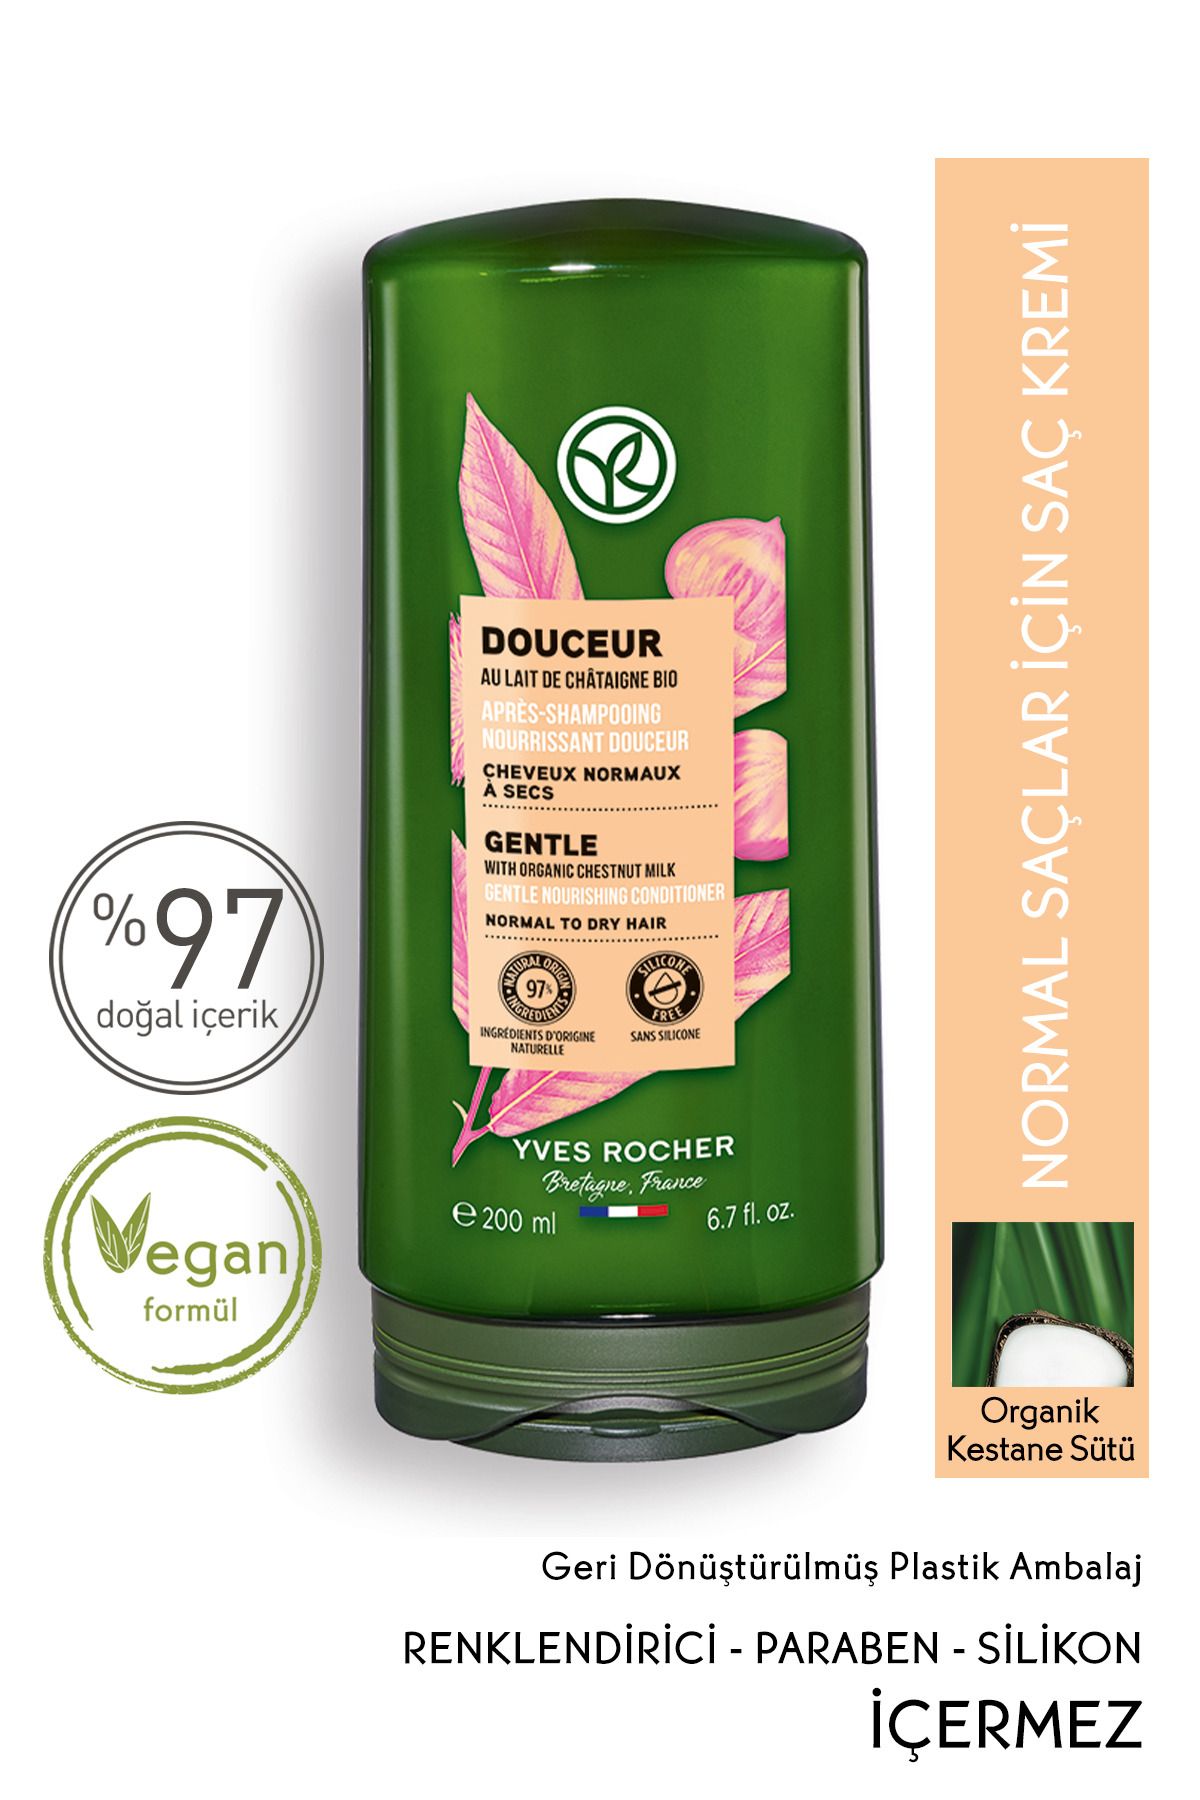 Yves Rocher Normal/Kuru Saçlar İçin (Doucer) Besleyici Kolay Tarama Saç Kremi - Vegan-200 ml